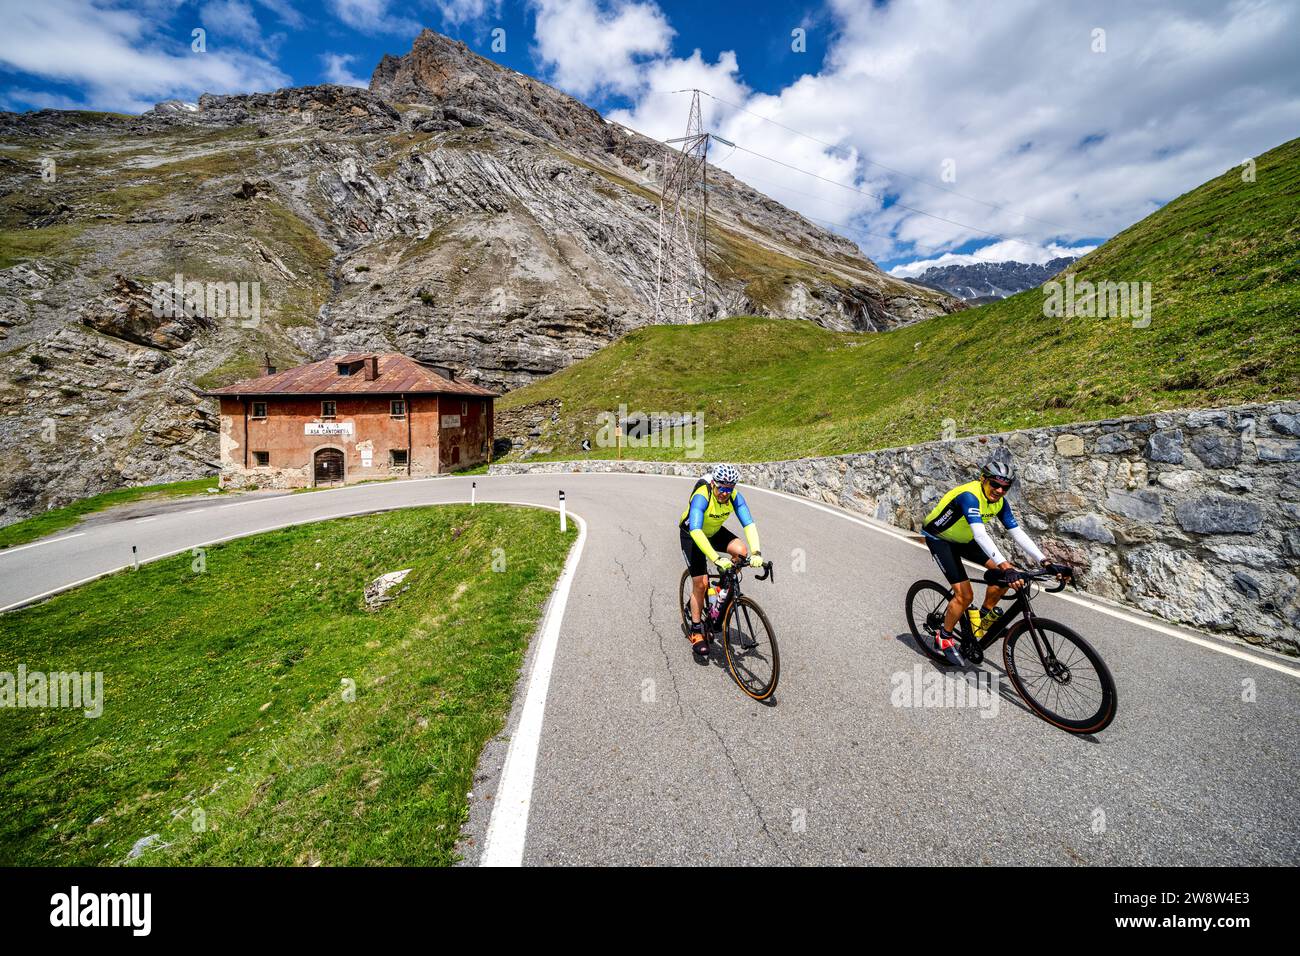 Cyclisme sur route au col du Stelvio près de Bormio, Italie Banque D'Images